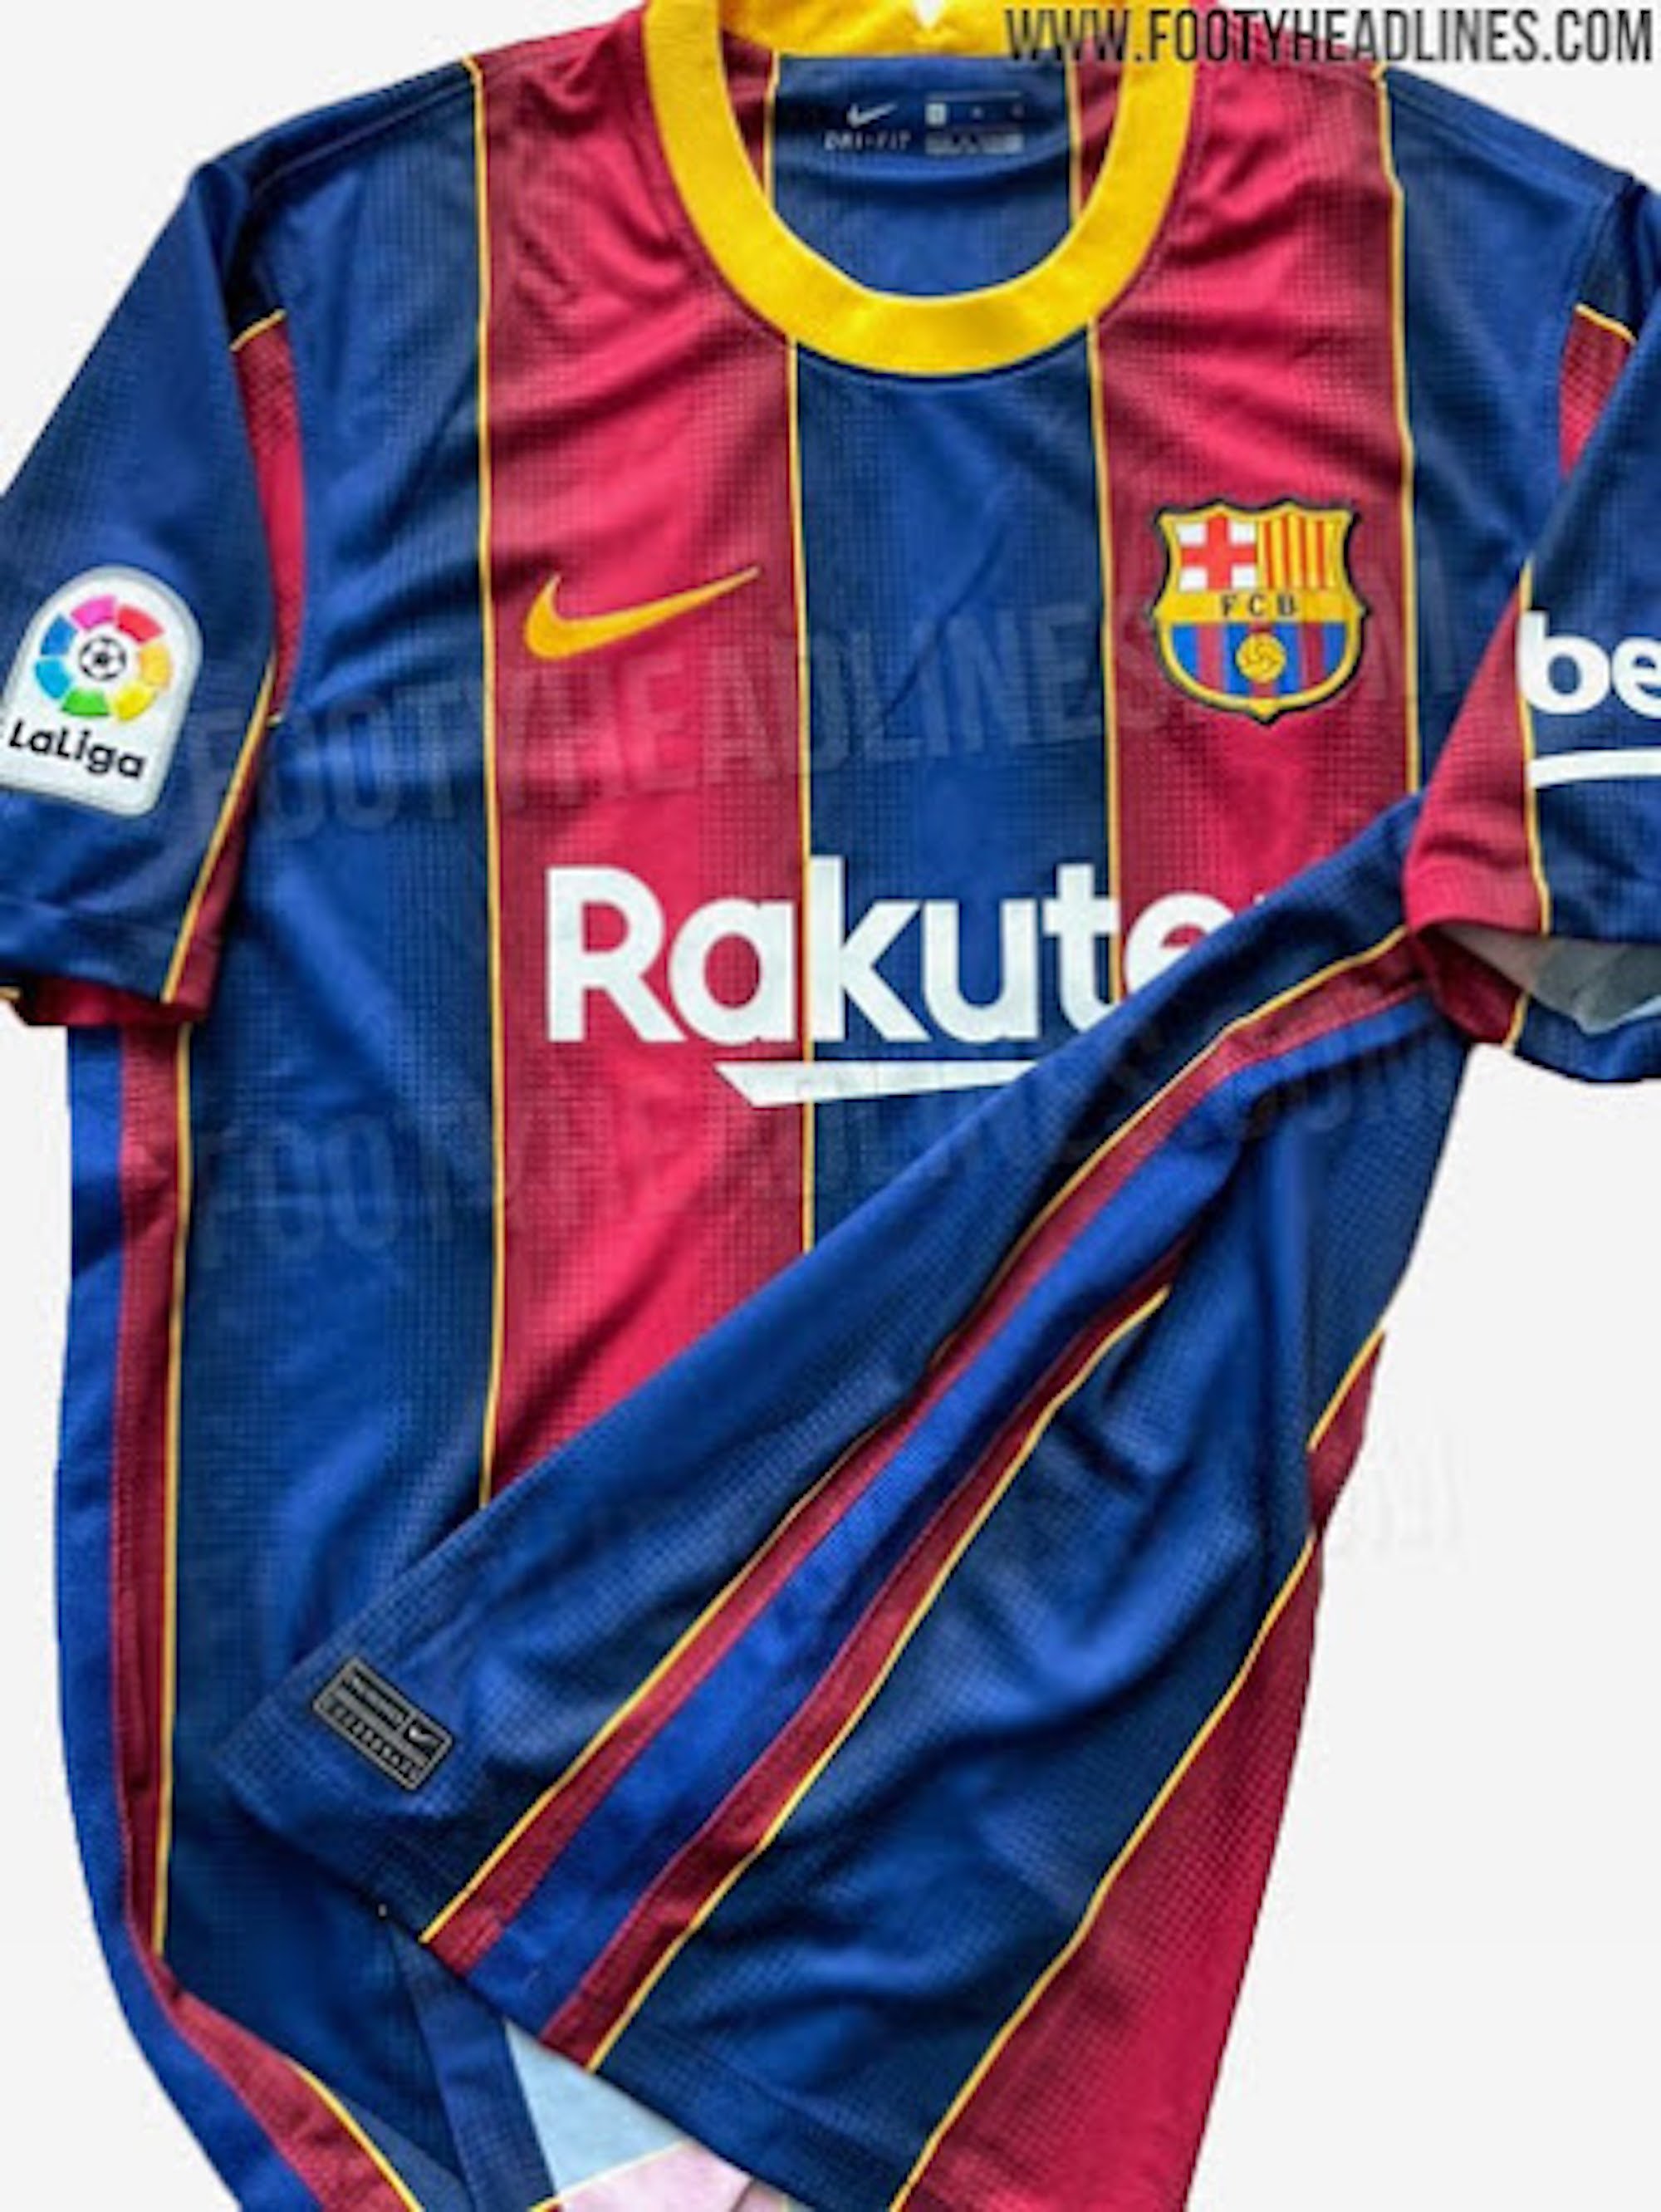 El Barça ya vende la nueva camiseta cuando todavía no la ha hecho oficial